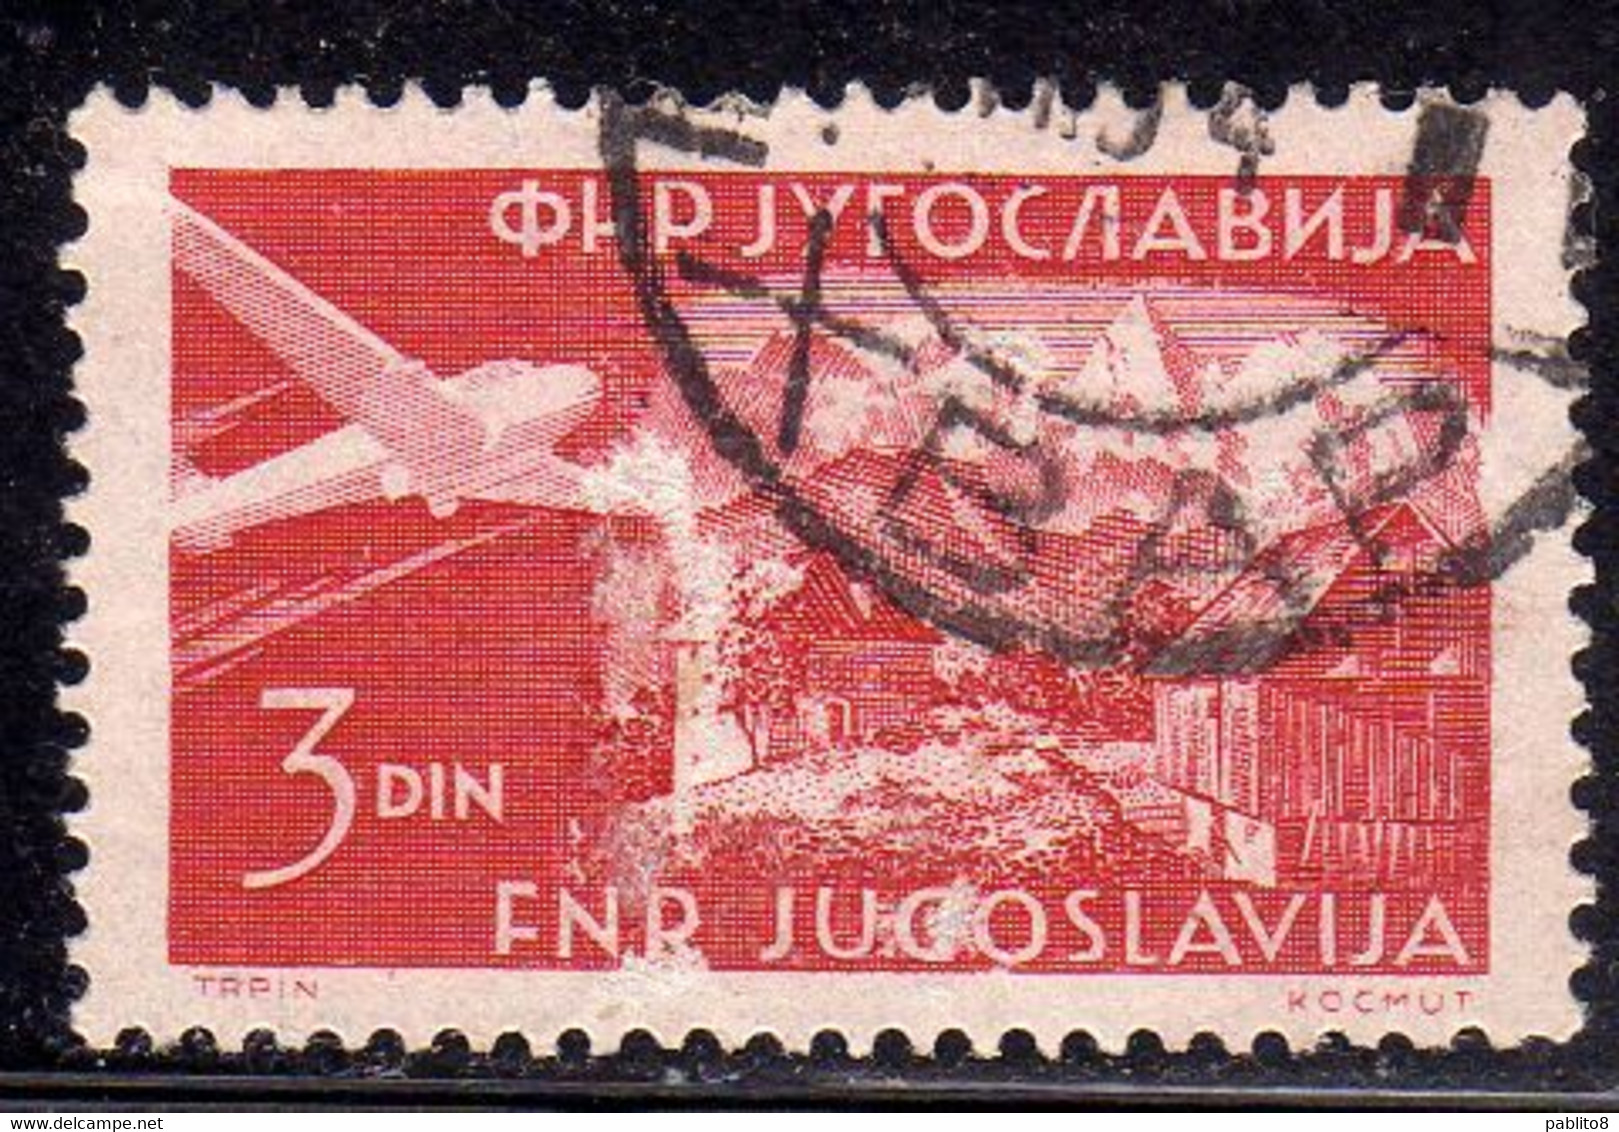 YUGOSLAVIA JUGOSLAVIA 1951 AIR MAIL POSTA AEREA PLANE OVER CARNIOLA 3d USED USATO OBLITERE' - Luftpost